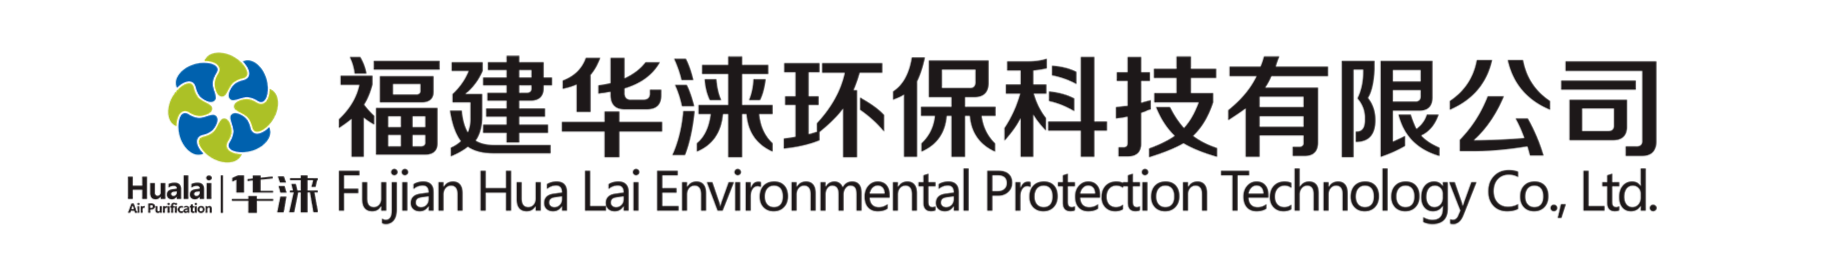 喷漆水洗台-福建华涞环保科技有限公司